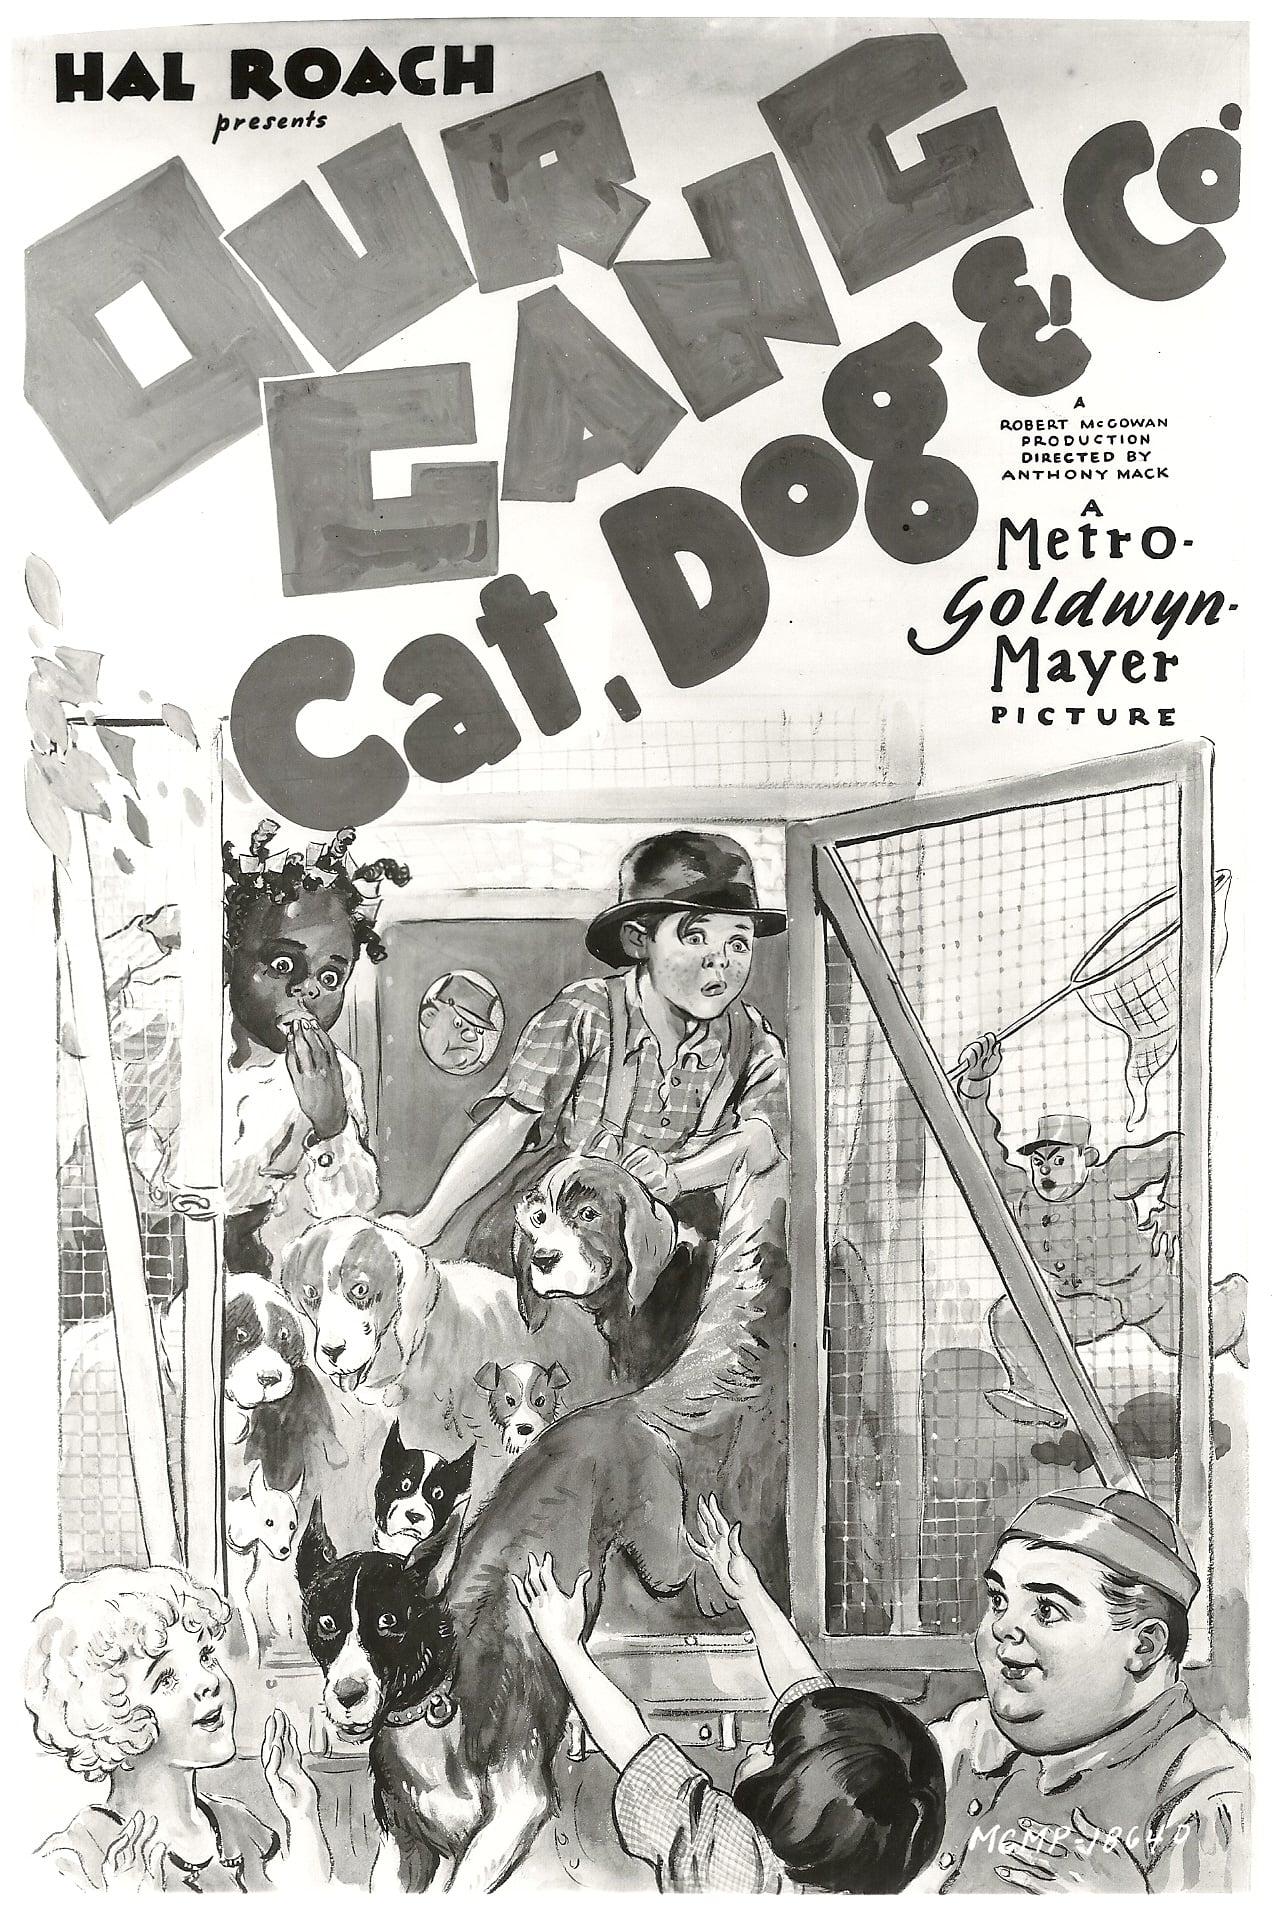 Cat, Dog & Co. (1929)